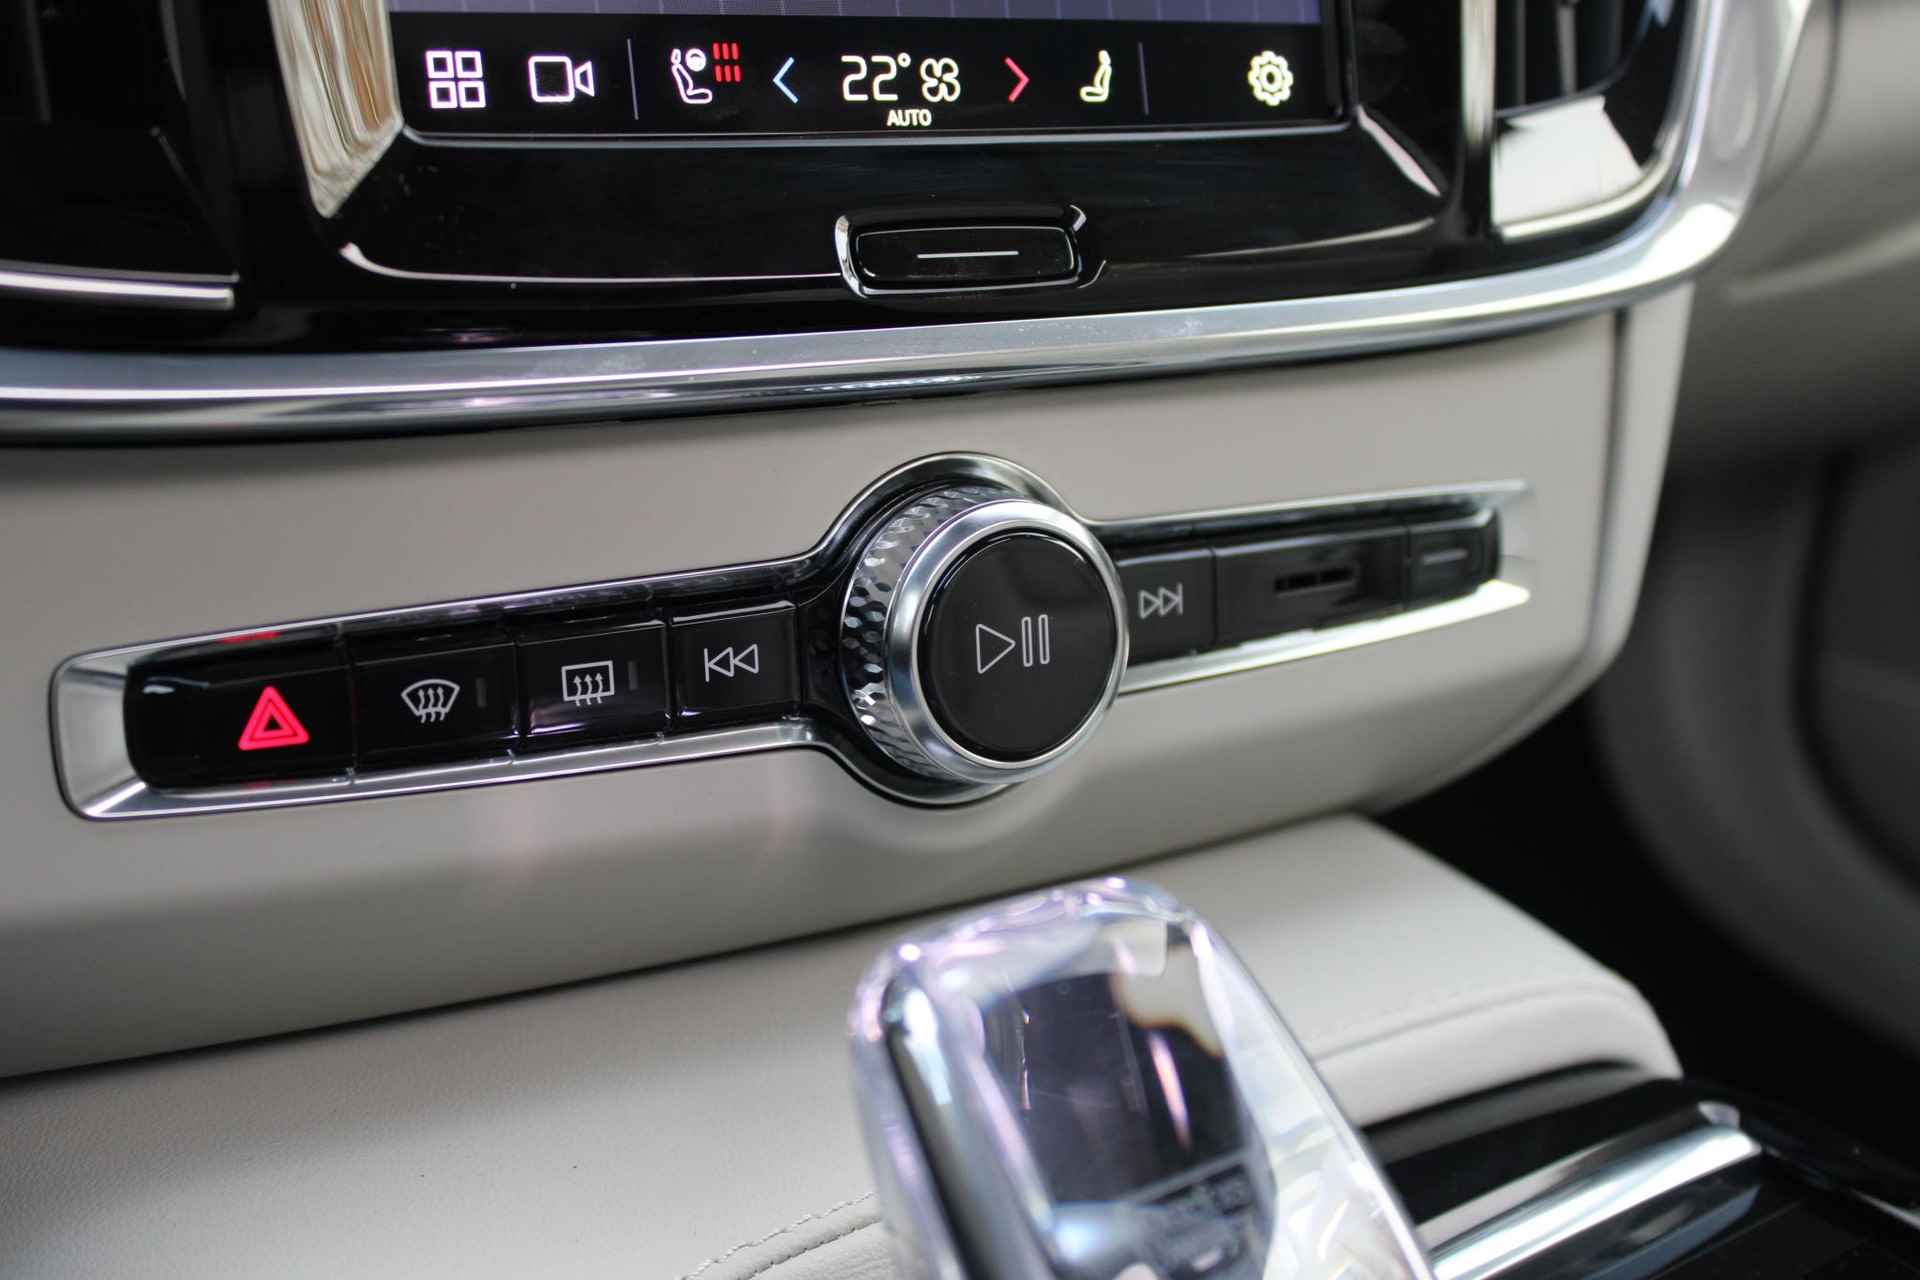 Volvo V90 AUT8 350PK T6 Recharge AWD Plus Bright, Adaptieve Cruise Control met Pilot Assist, Luchtvering, Elektrisch bedienbaar panoramisch schuif-/kanteldak, Premium audio by Harman Kardon, Elektrische voorstoelen met ventilatie, Verwarmbare voorstoelen + stuurwiel,  Park Assist voor + achter, 360 Parkeercamera, Alarmklasse III, Blind Spot Information System, Keyless Entry, Apple CarPlay, 20'' Lichtmetalen wielen - 48/50